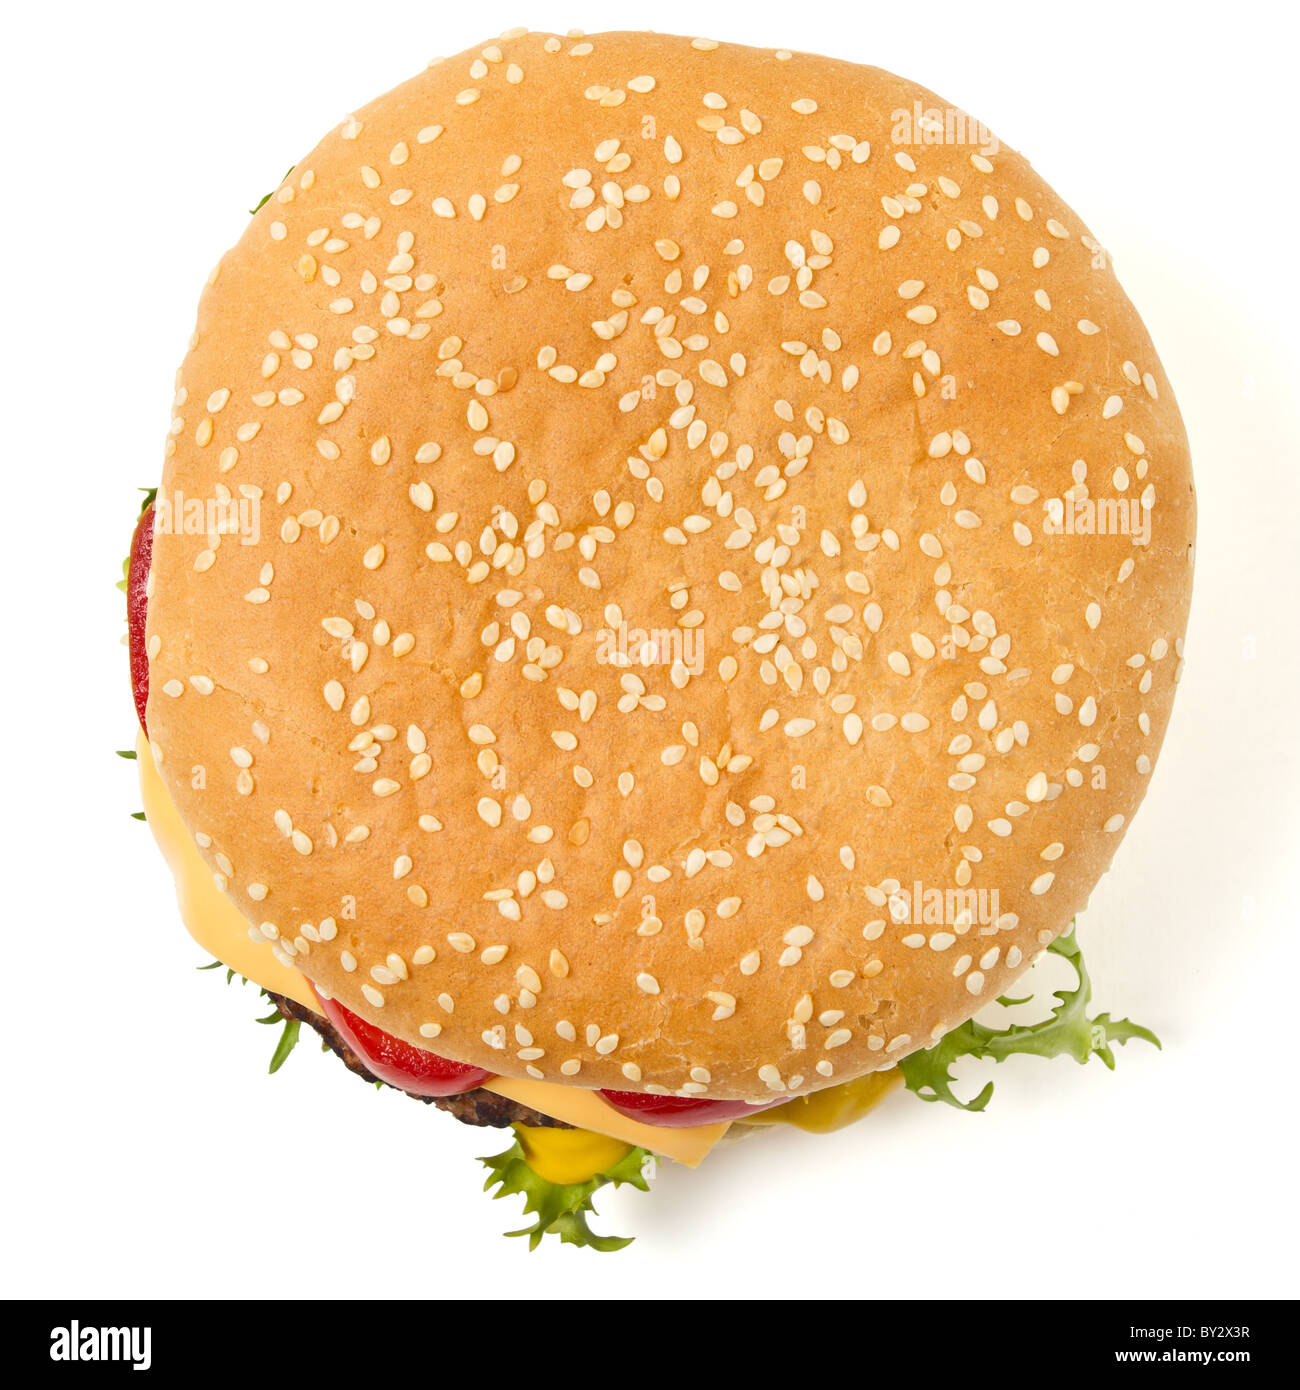 Cheeseburger und Senf in Sesam Brötchen isoliert auf weiss ausgesät. Stockfoto